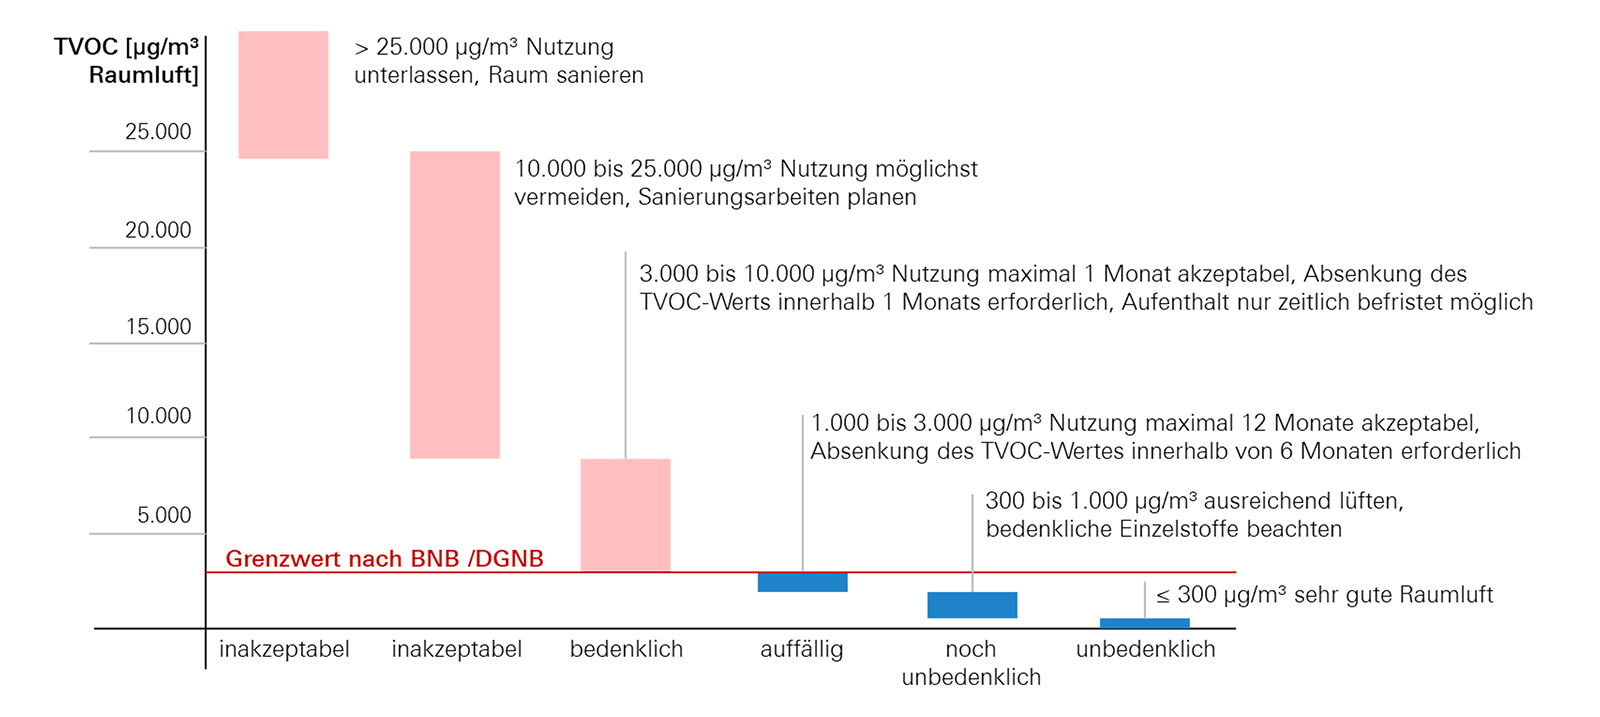 TVOC-Bewertung und Empfehlung der Ad-hoc-Arbeitsgruppe des Umweltbundesamts (Quelle: Bayerische Architektenkammer, 2018: Nachhaltigkeit gestalten, S. 169)